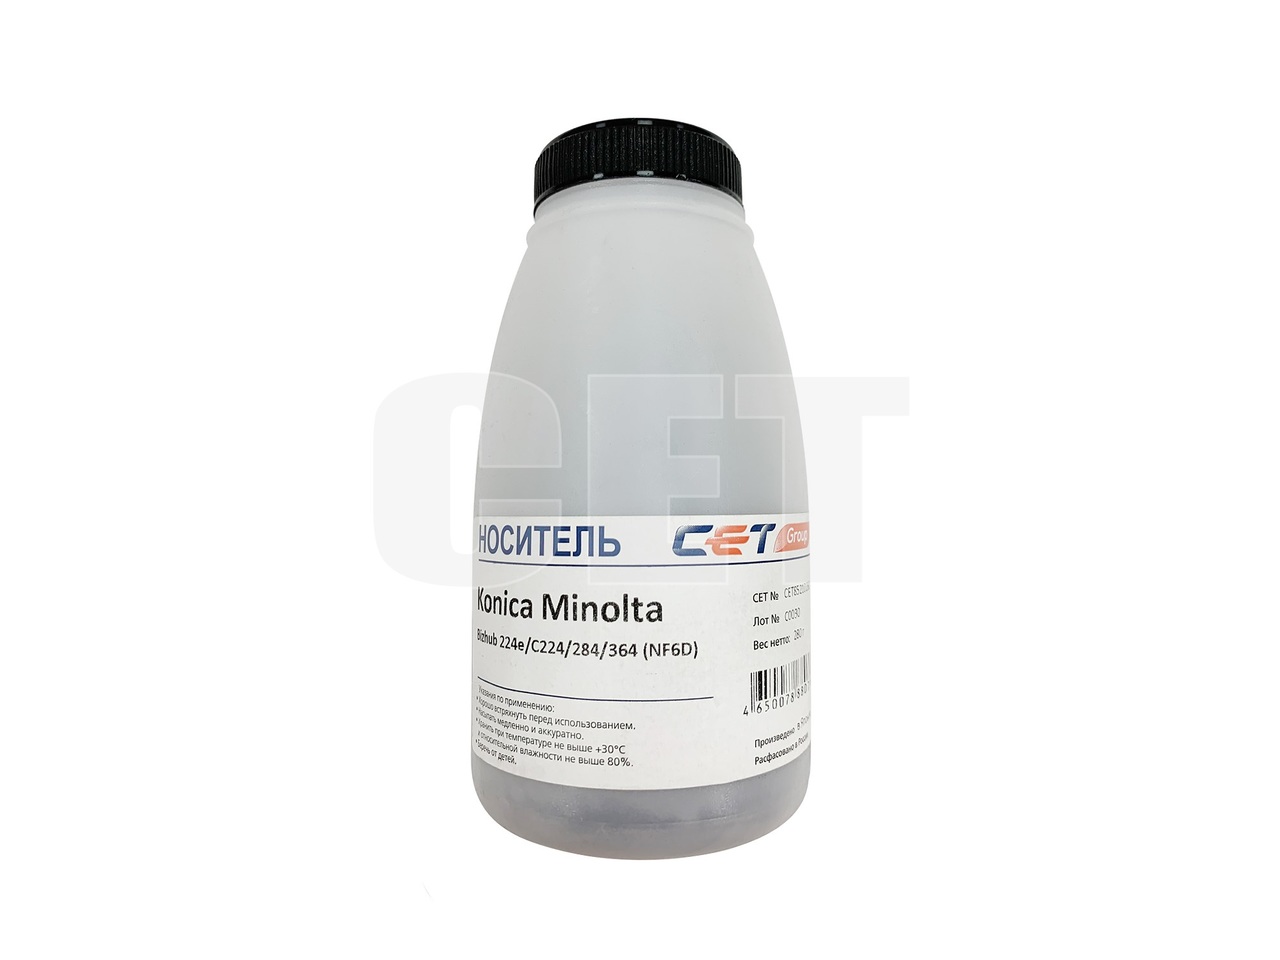 Носитель (девелопер) NF6D для KONICA MINOLTA Bizhub224e/C224/284/364 (Japan), 280г/бут, CET8521D280